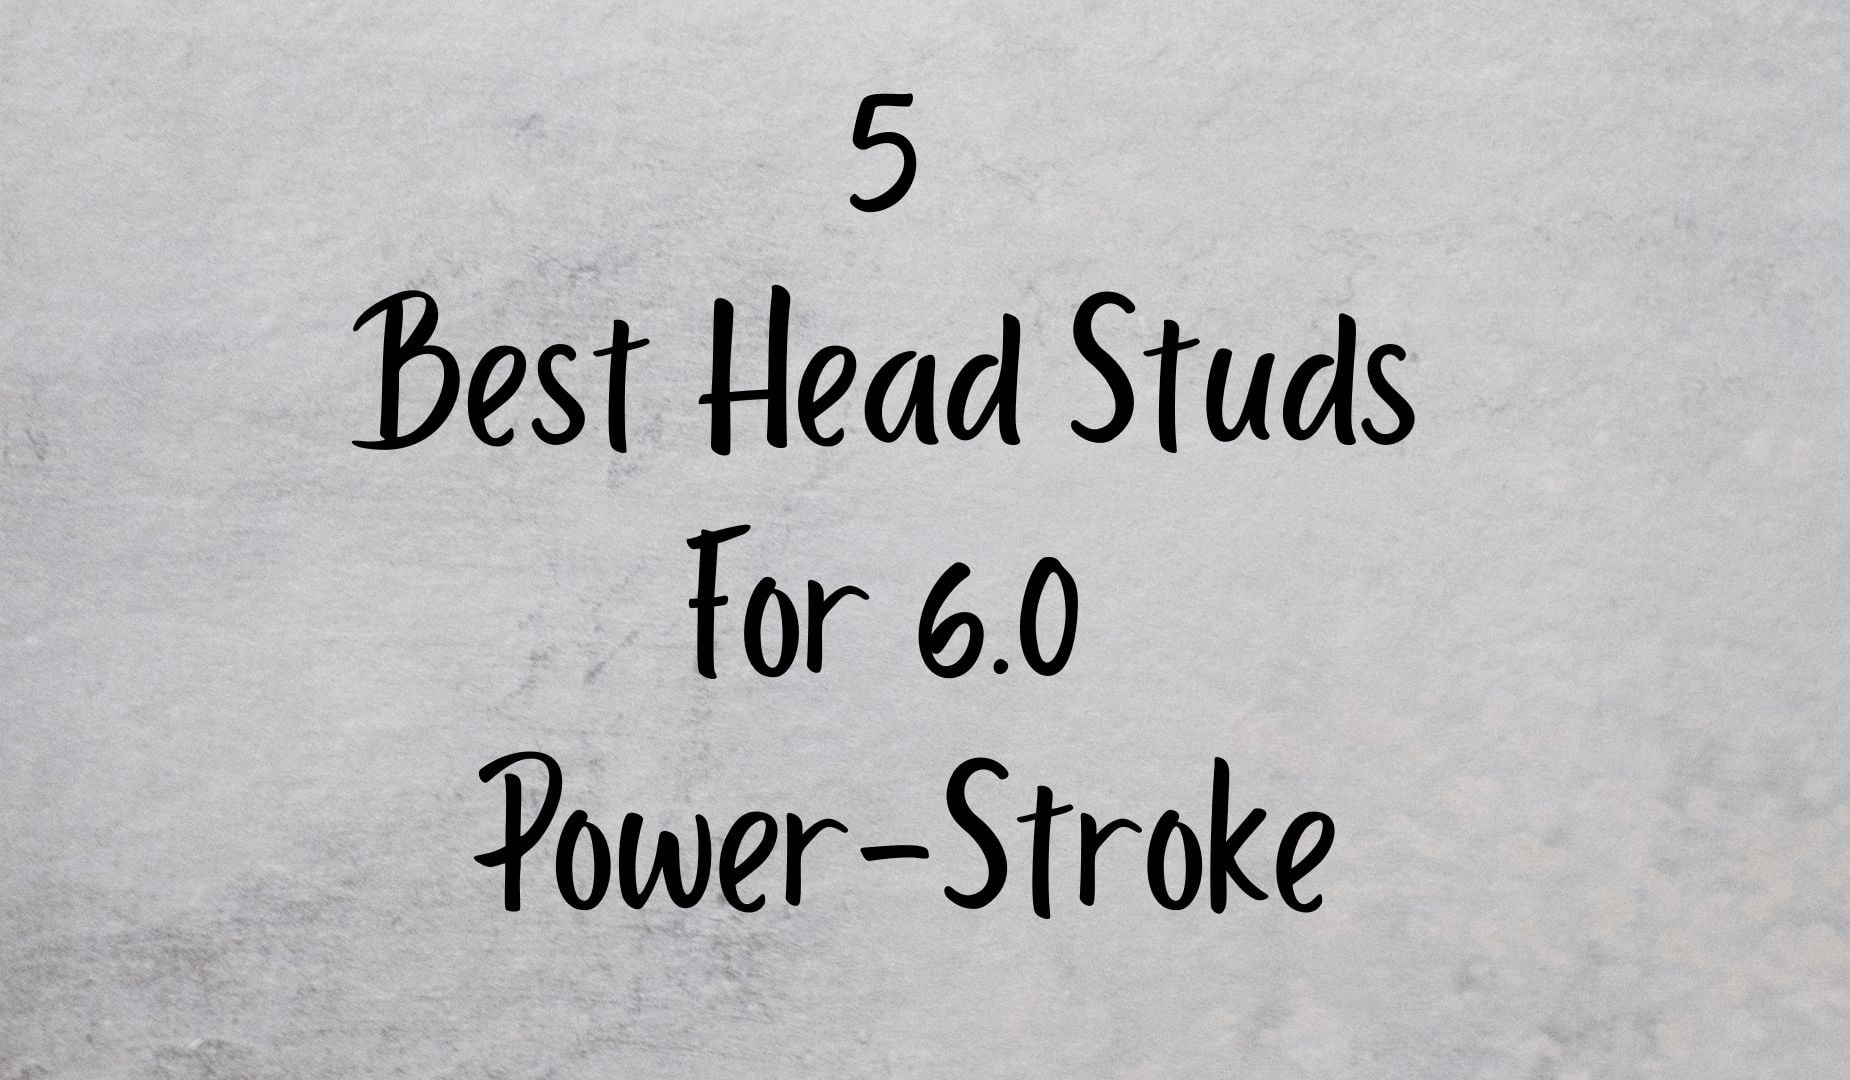 5 Best Head Studs For 6.0 power-stroke